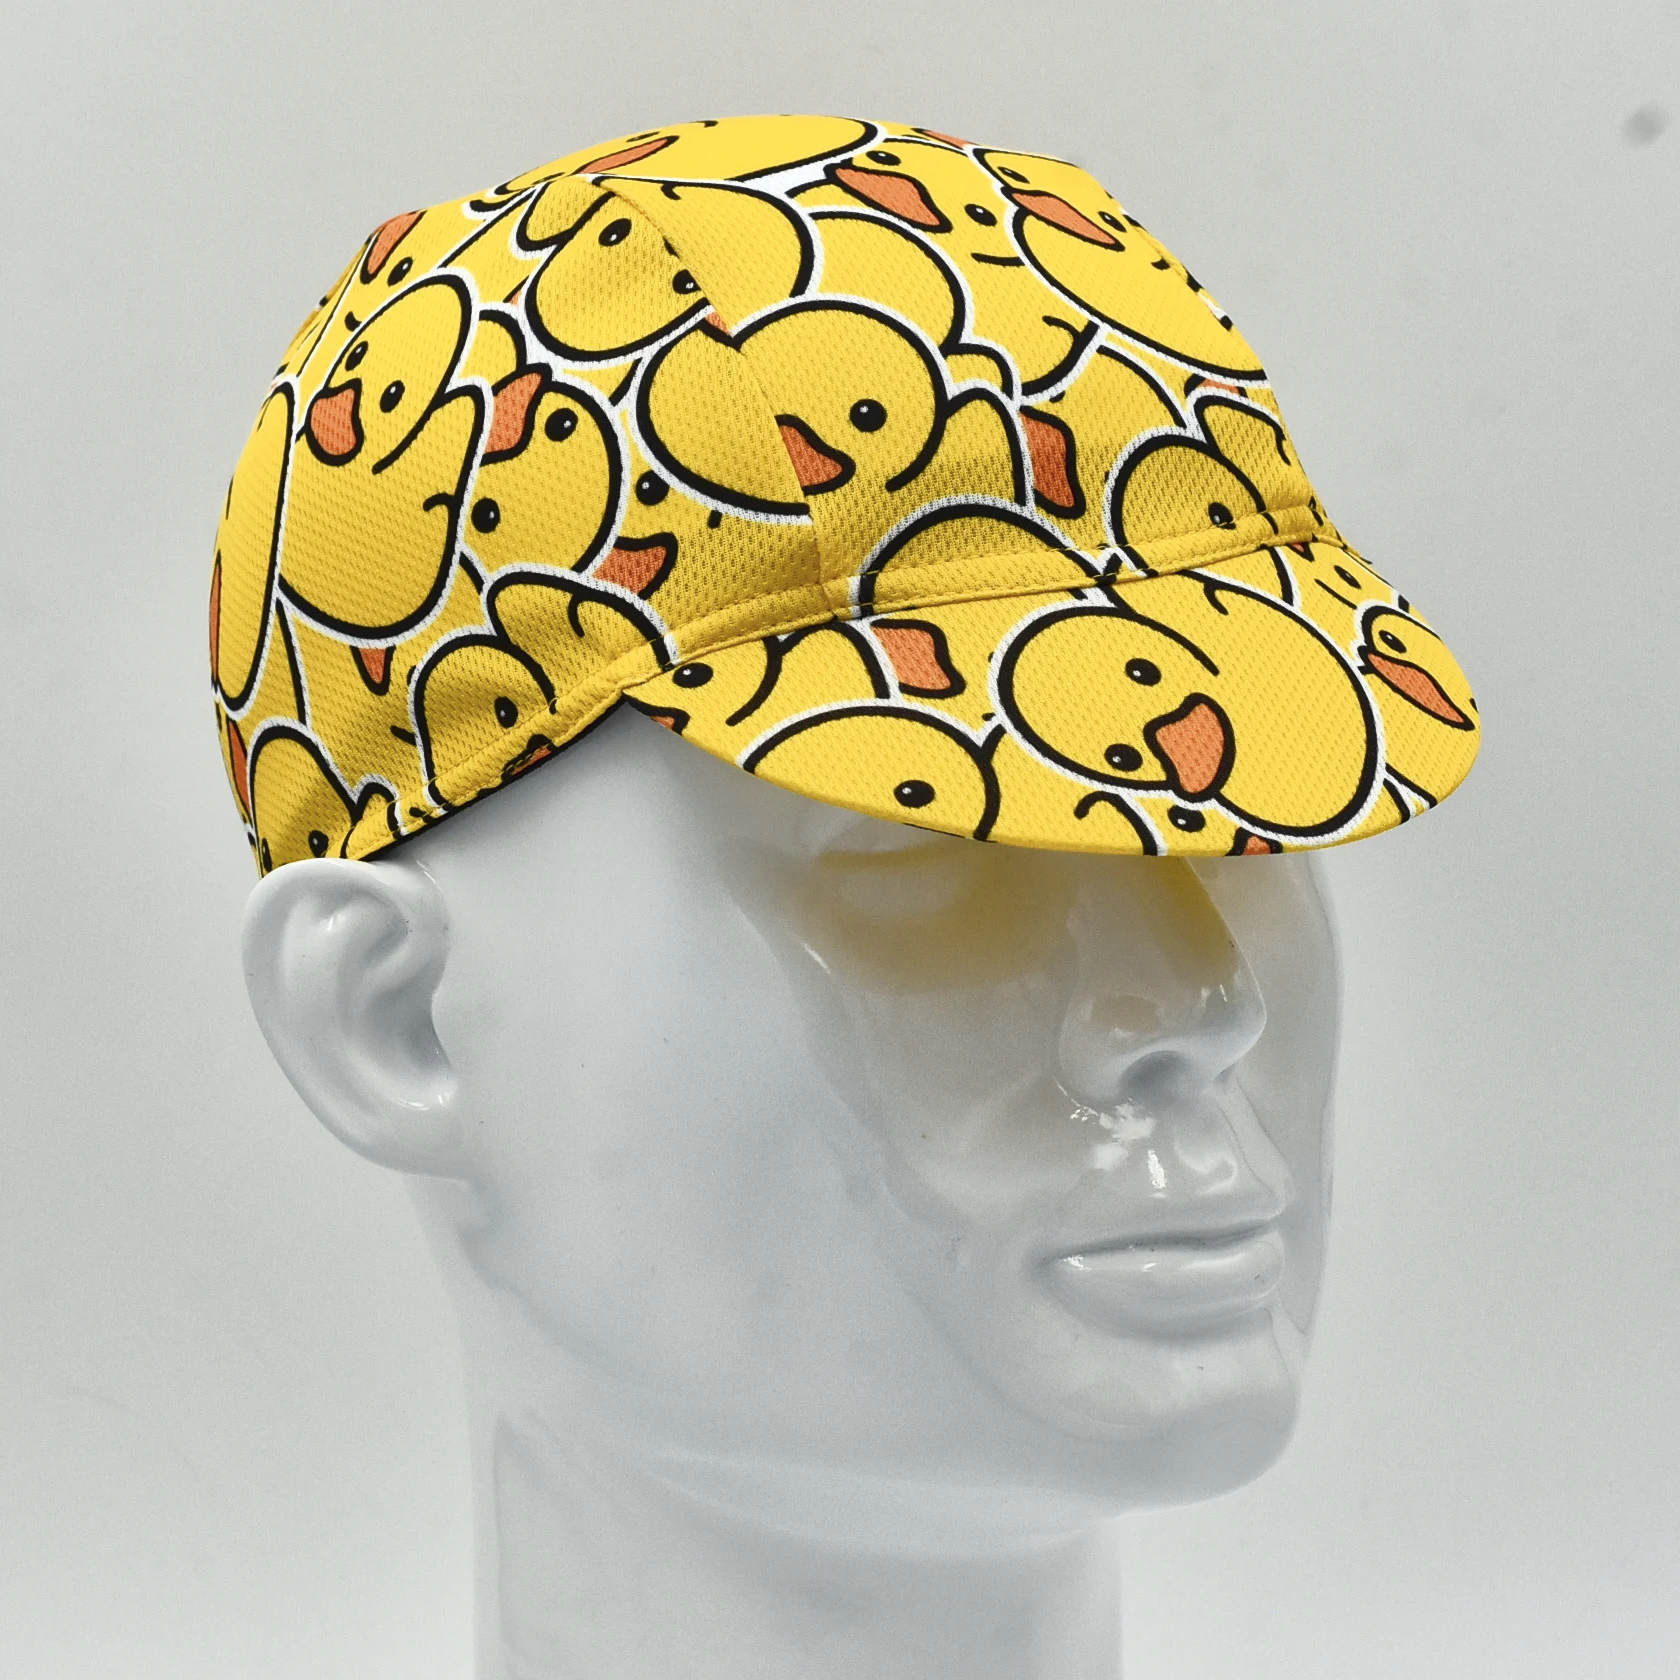 Велосипедная кепка Little Yellow Duck, цветная велосипедная кепка, кепка для бега, спортивная кепка на открытом воздухе Изображение 3